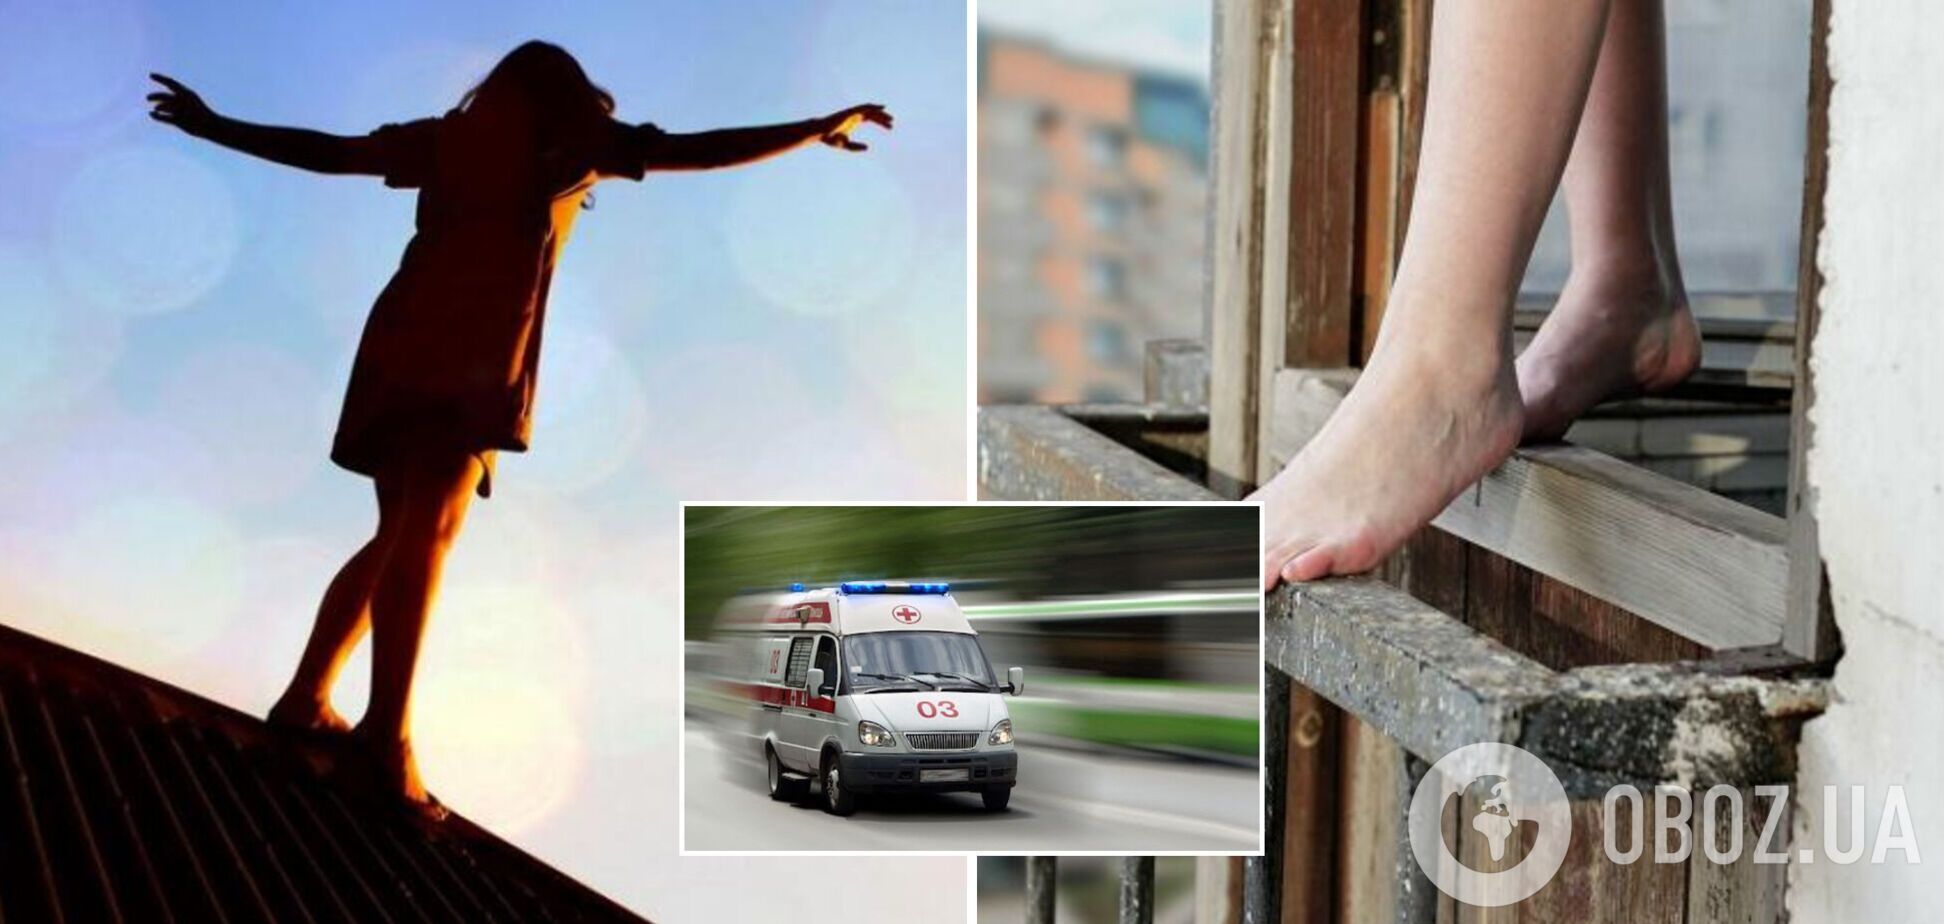 В Запорожье девушка прыгнула с 9 этажа многоэтажки